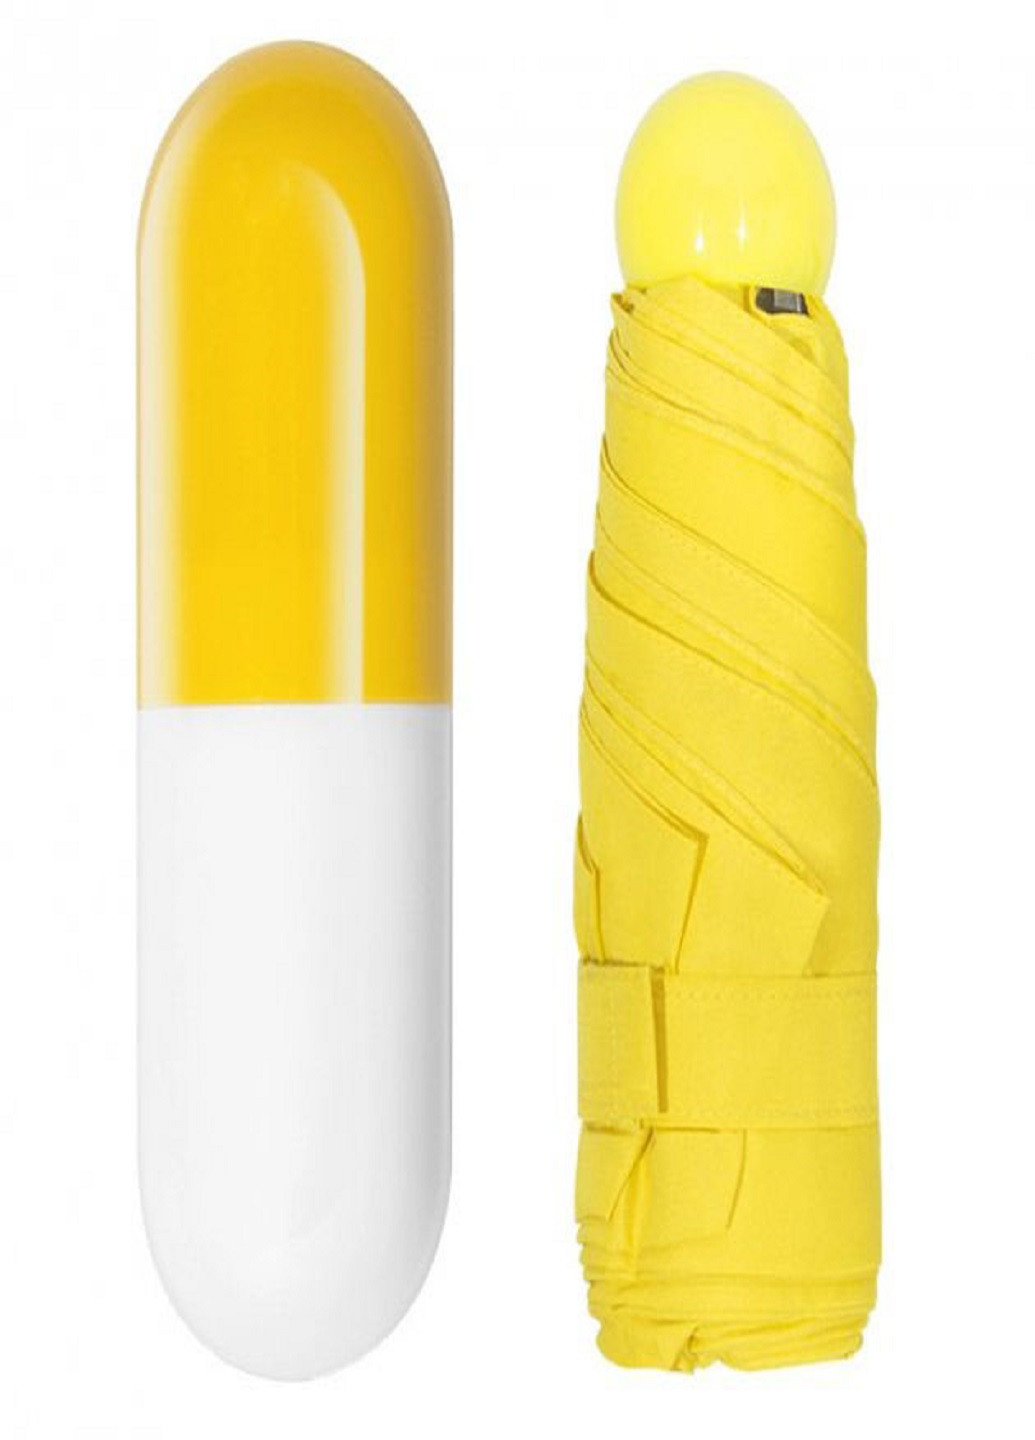 Компактный портативный зонтик в капсуле-футляре Желтый VTech (258235166)